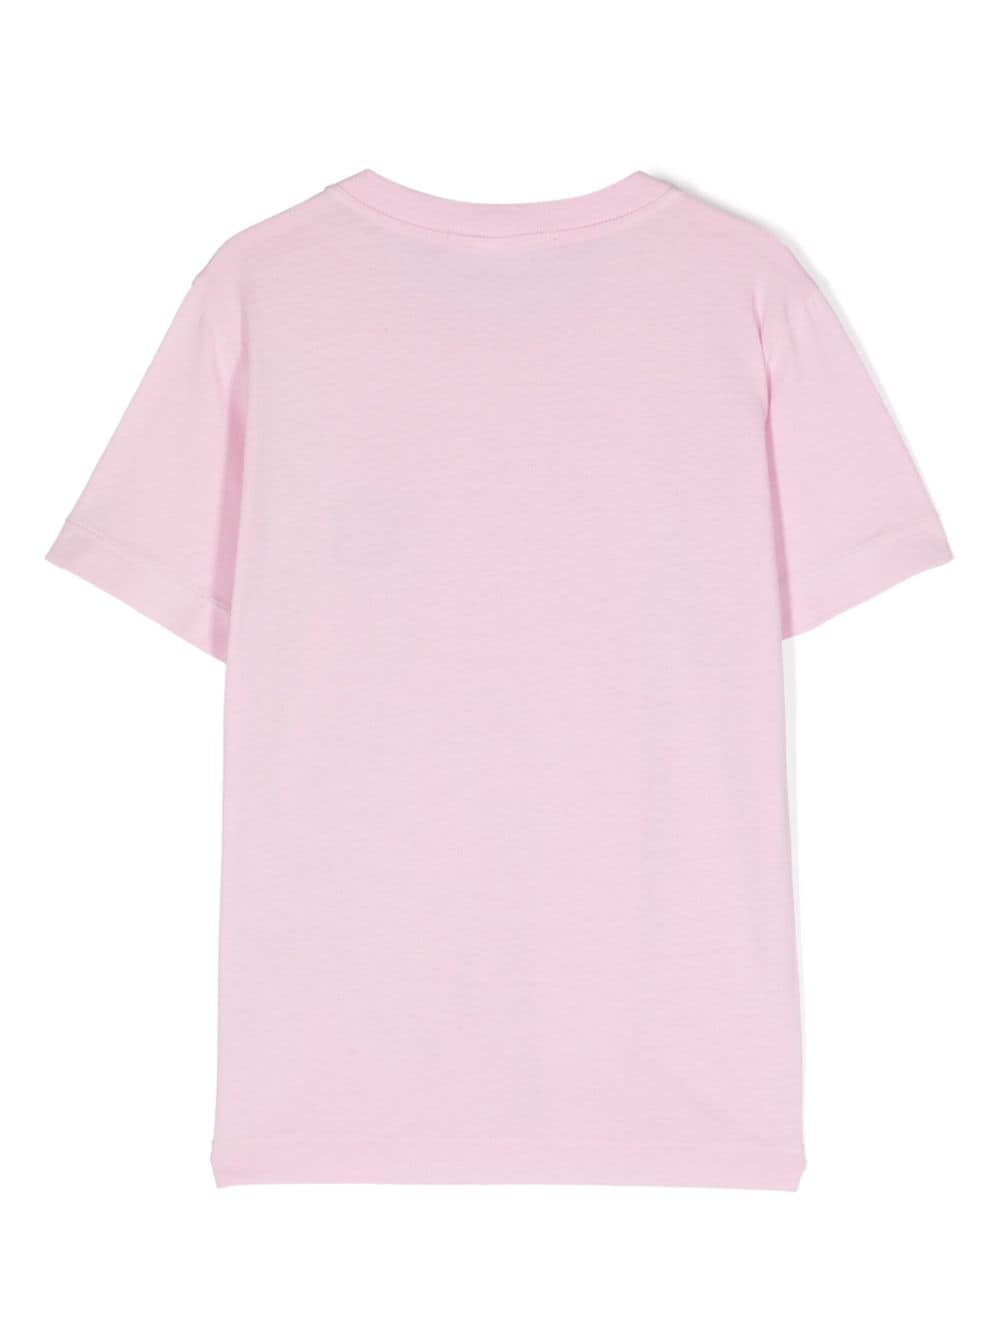 T-shirt rosa per bambino con logo